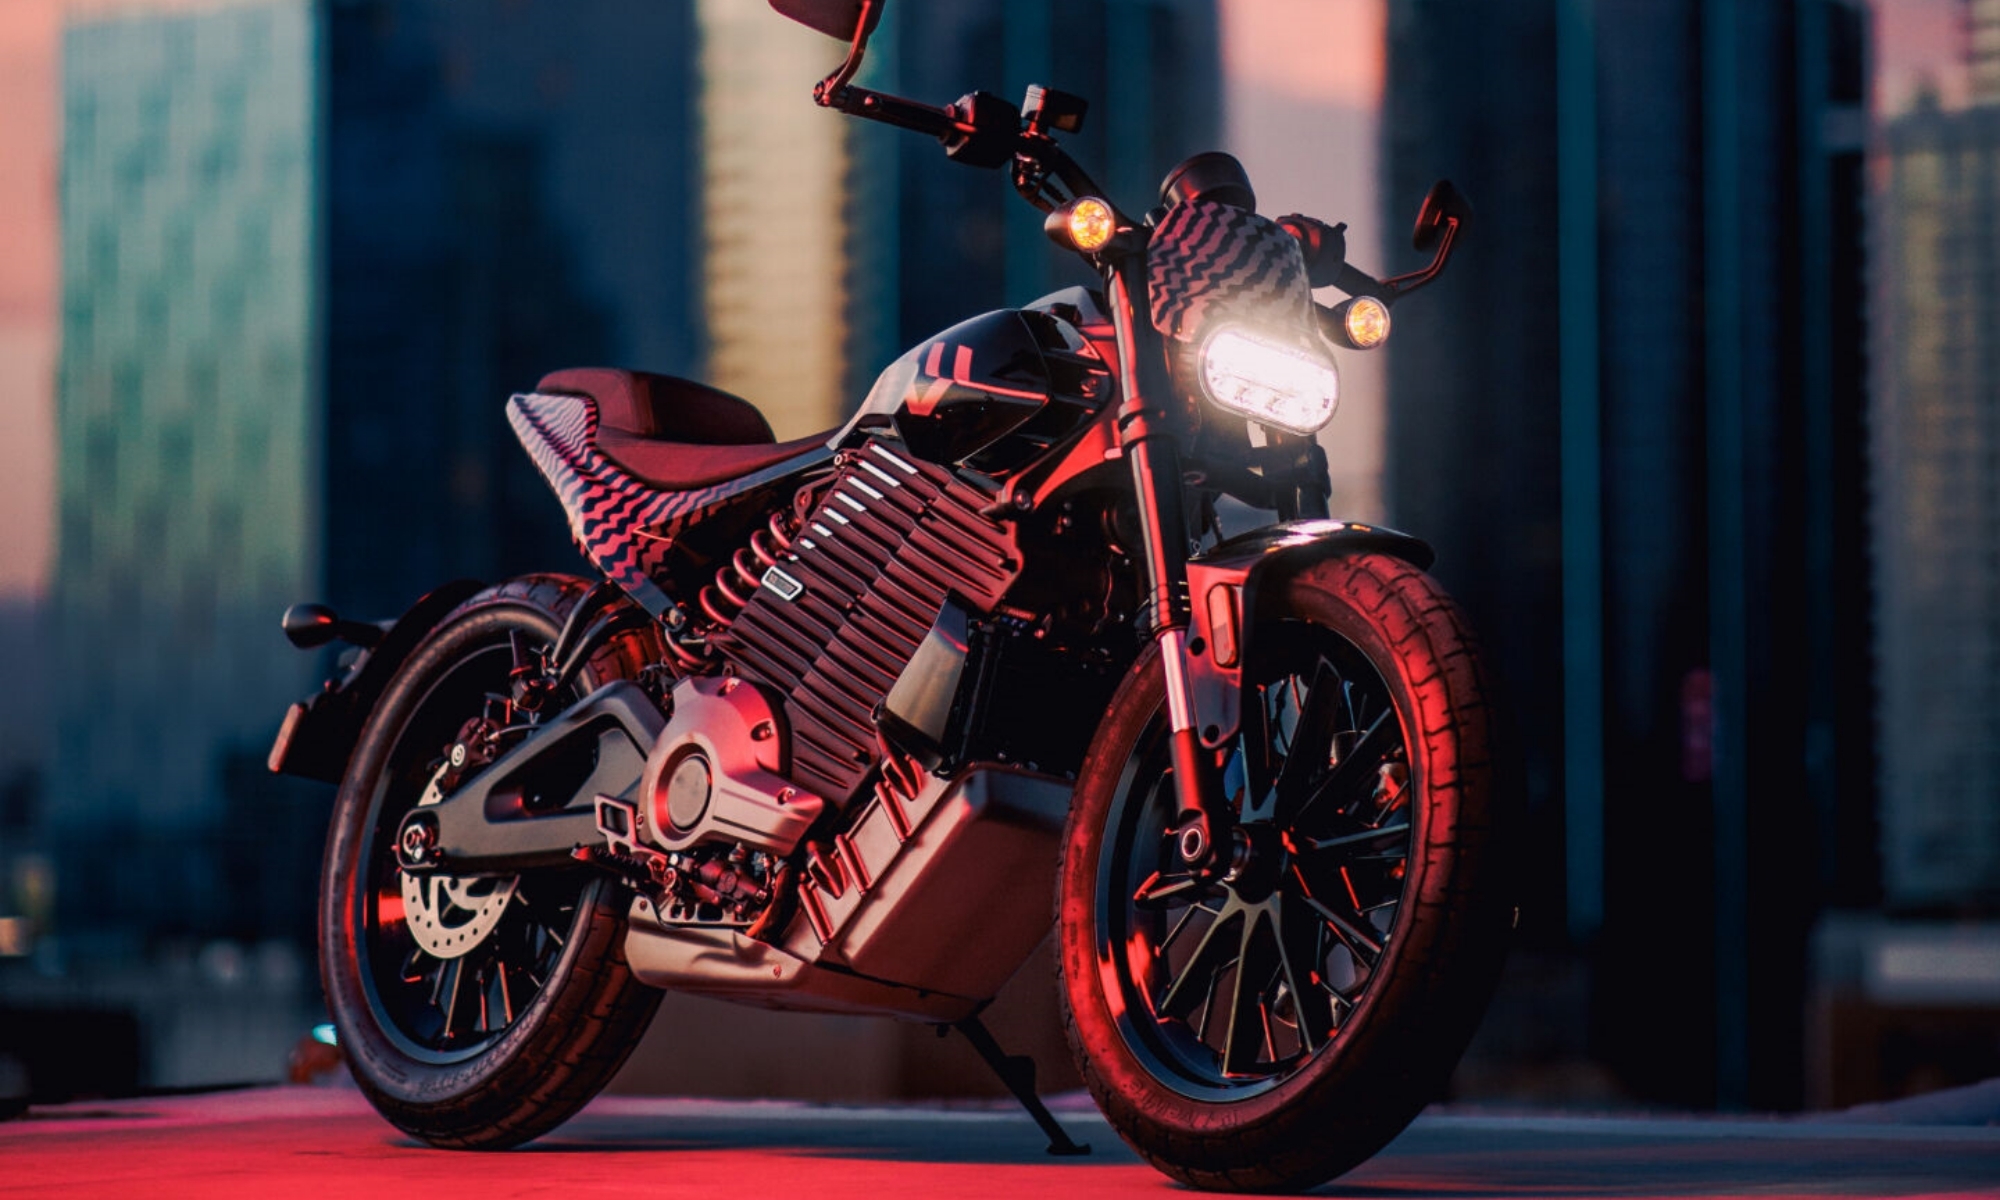 La S2 Del Mar es el segundo modelo de Livewire, la marca eléctrica de Harley-Davidson.